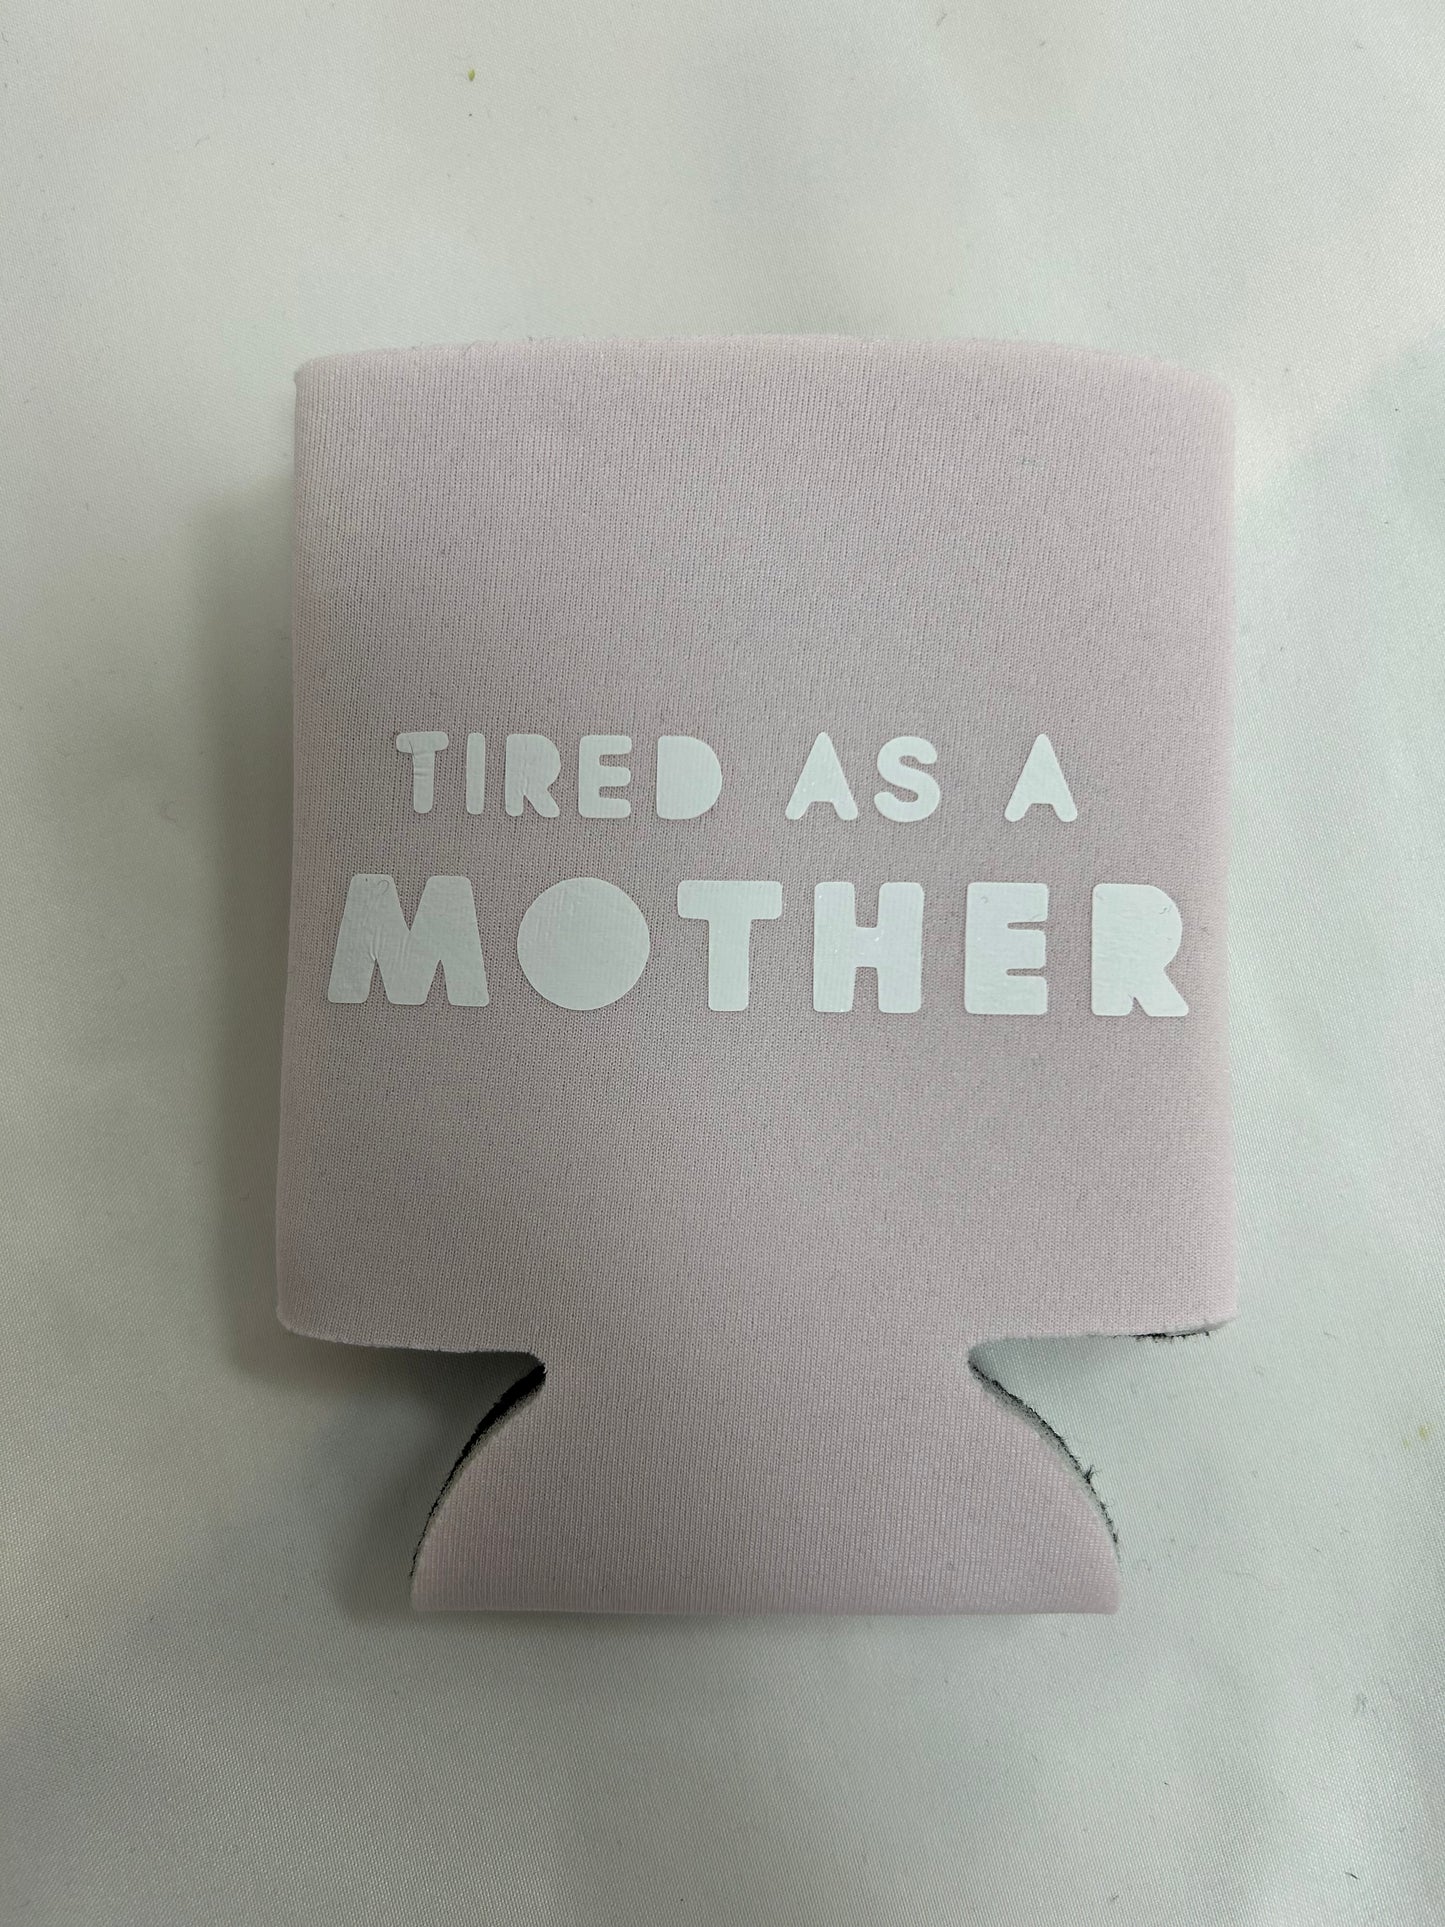 Cansada como una madre puede enfriar